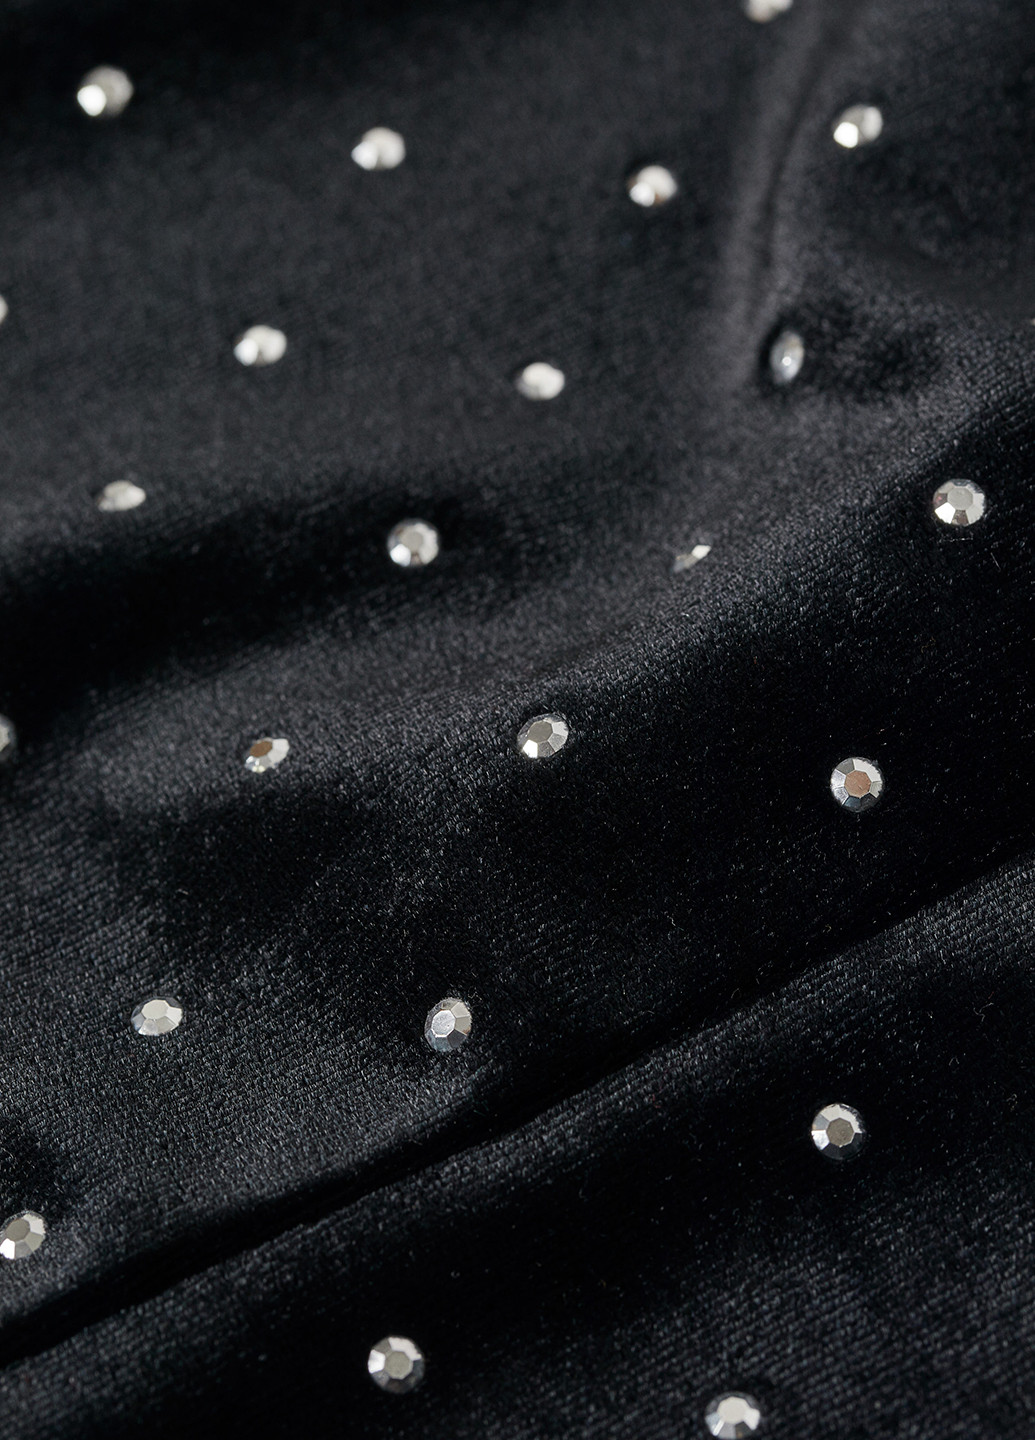 Черное коктейльное платье футляр H&M в горошек